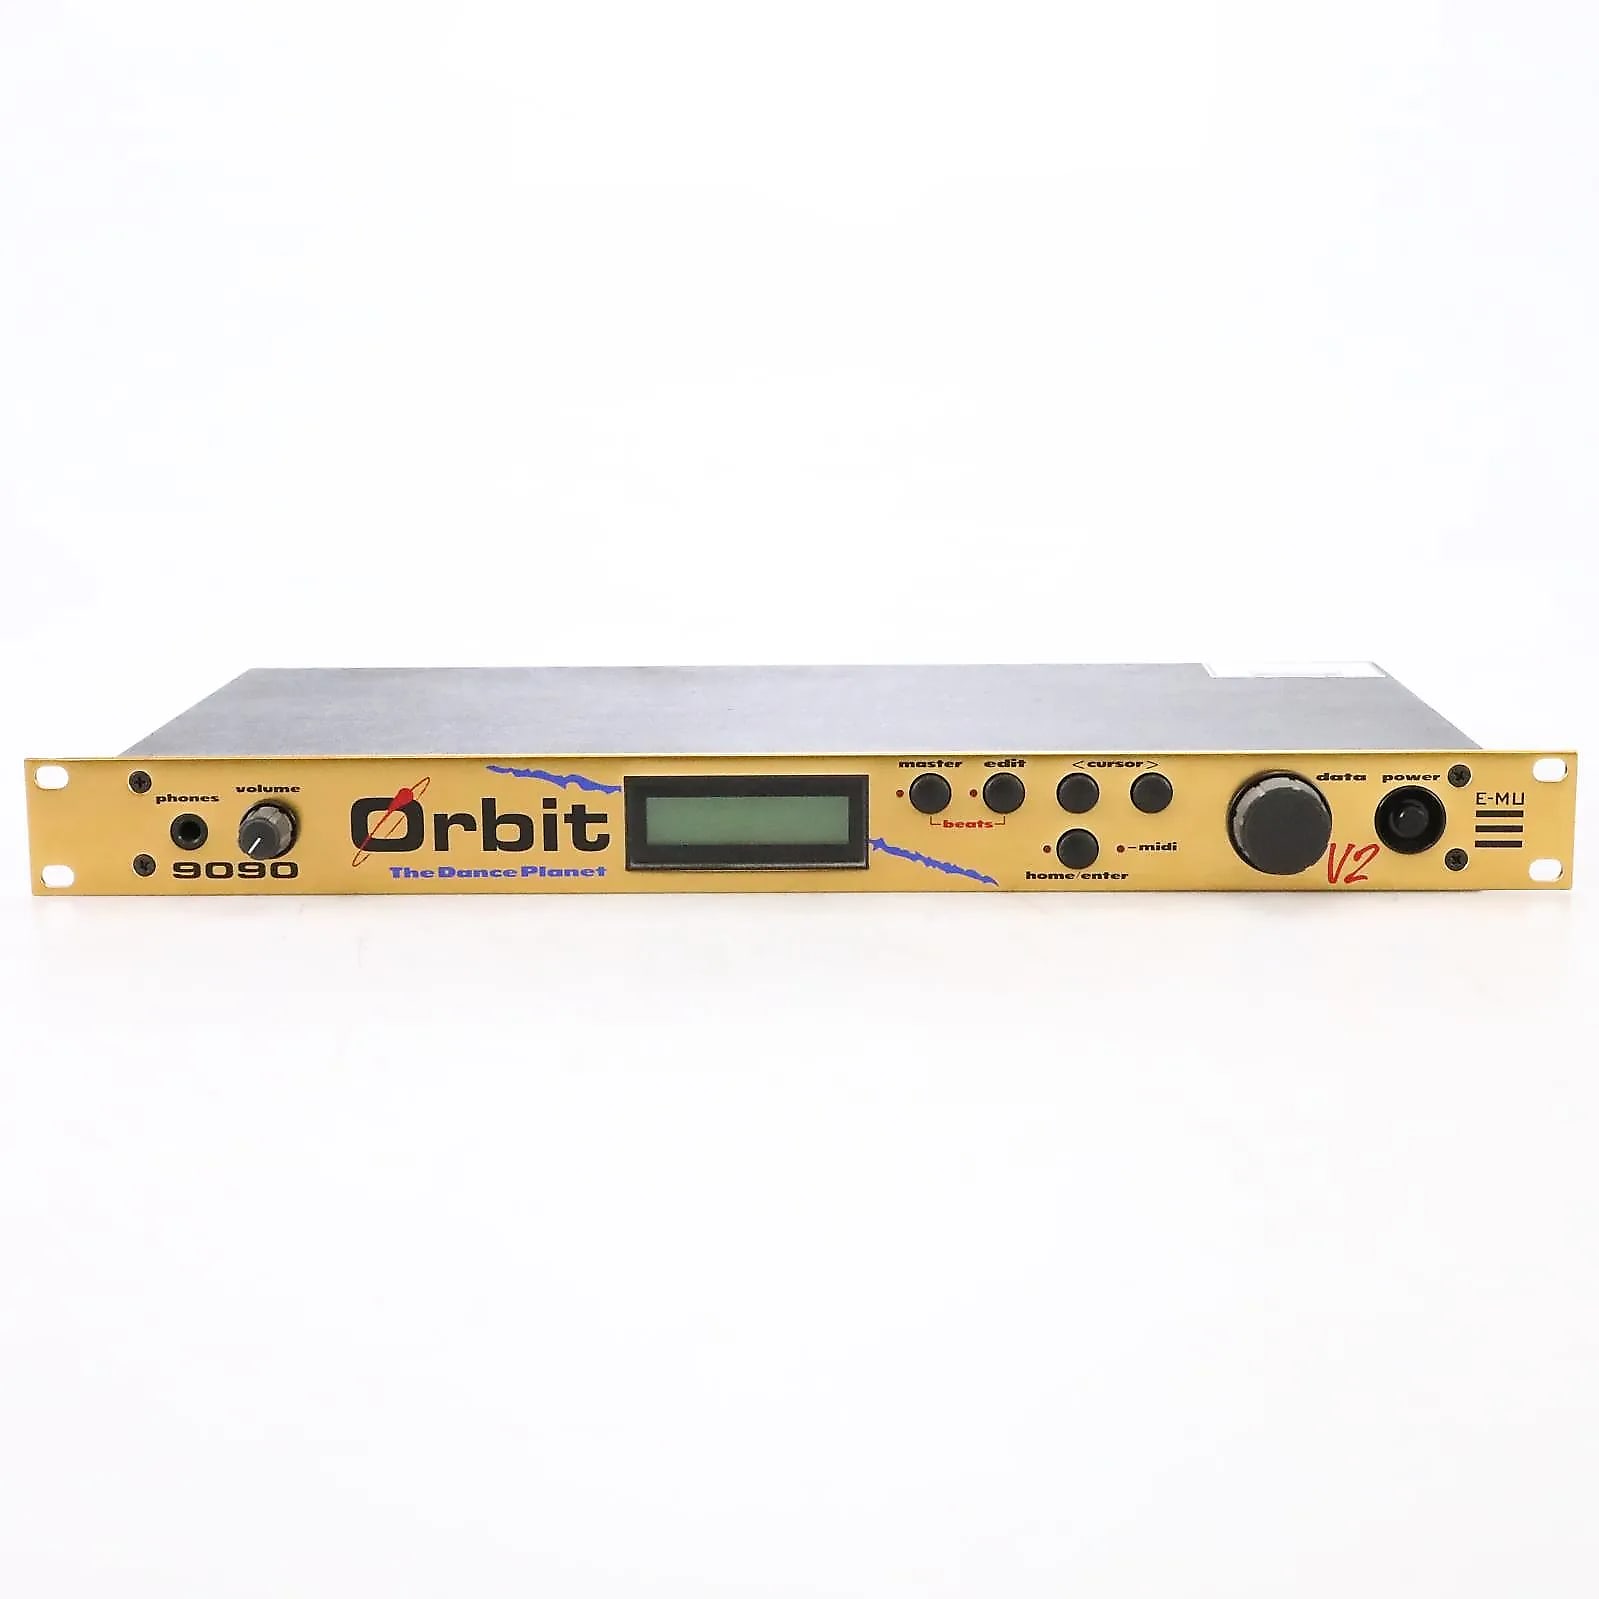 E-MU Systems Orbit 9090 V2 'The Dance Planet' Rackmount 32-Voice 